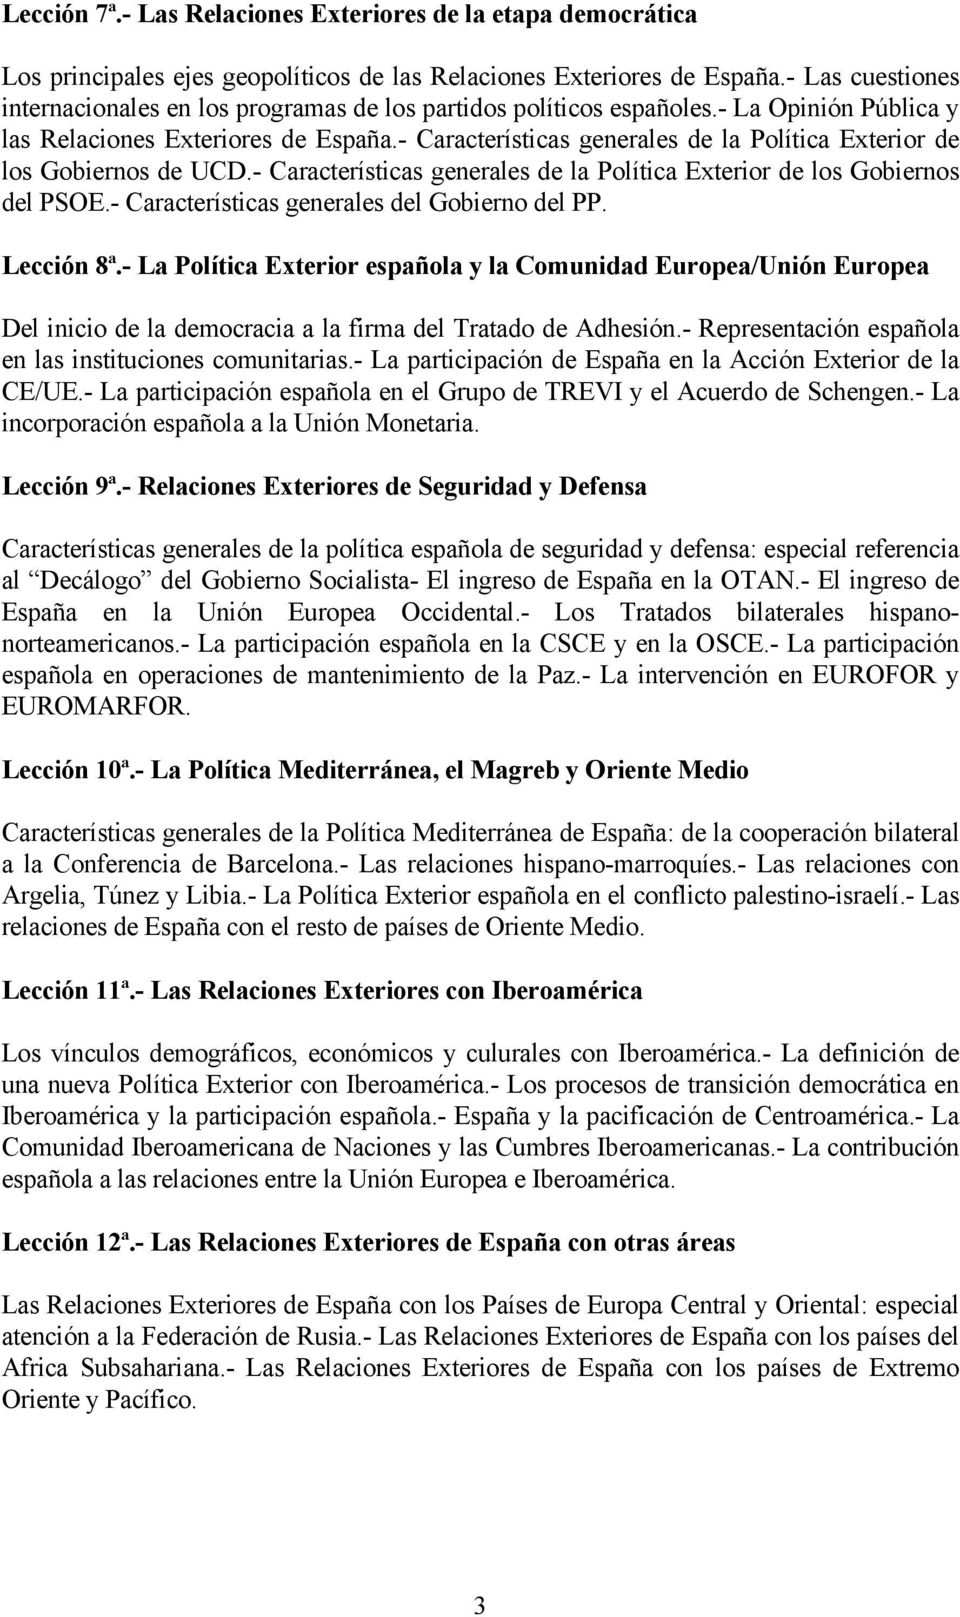 - Características generales de la Política Exterior de los Gobiernos de UCD.- Características generales de la Política Exterior de los Gobiernos del PSOE.